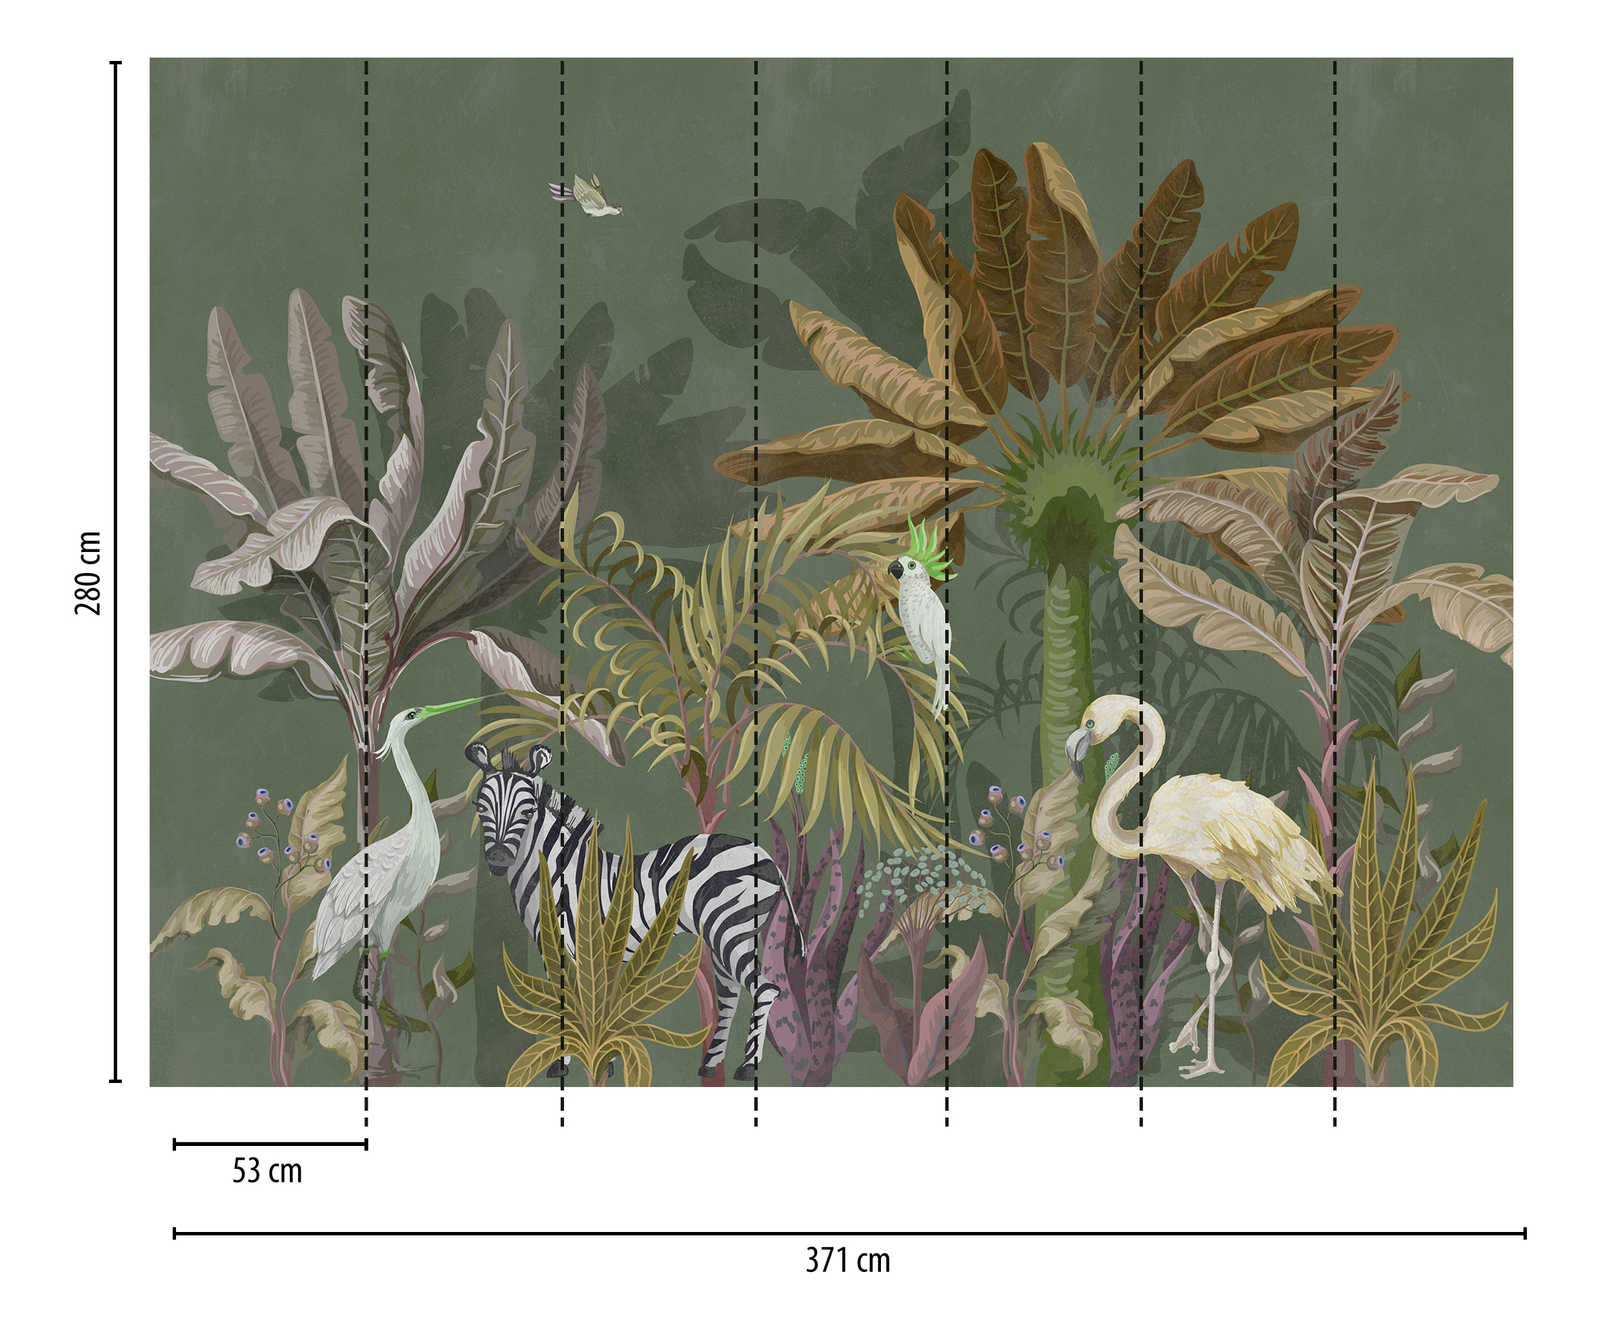             papel pintado novedad | papel pintado motivo selva animales y plantas
        